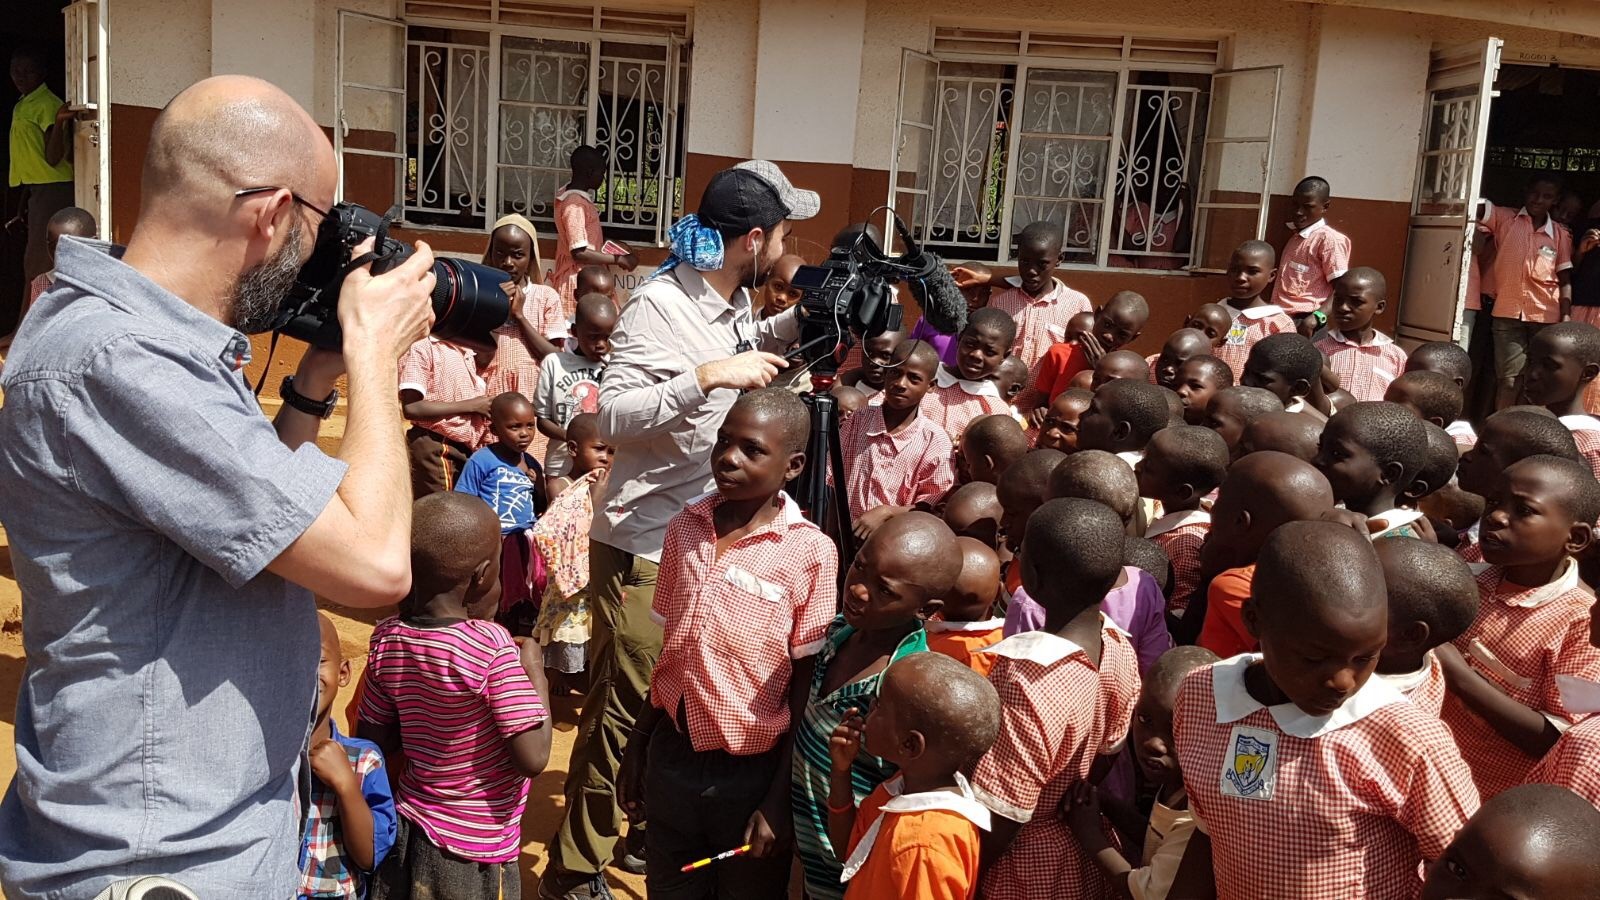 Filming in Uganda